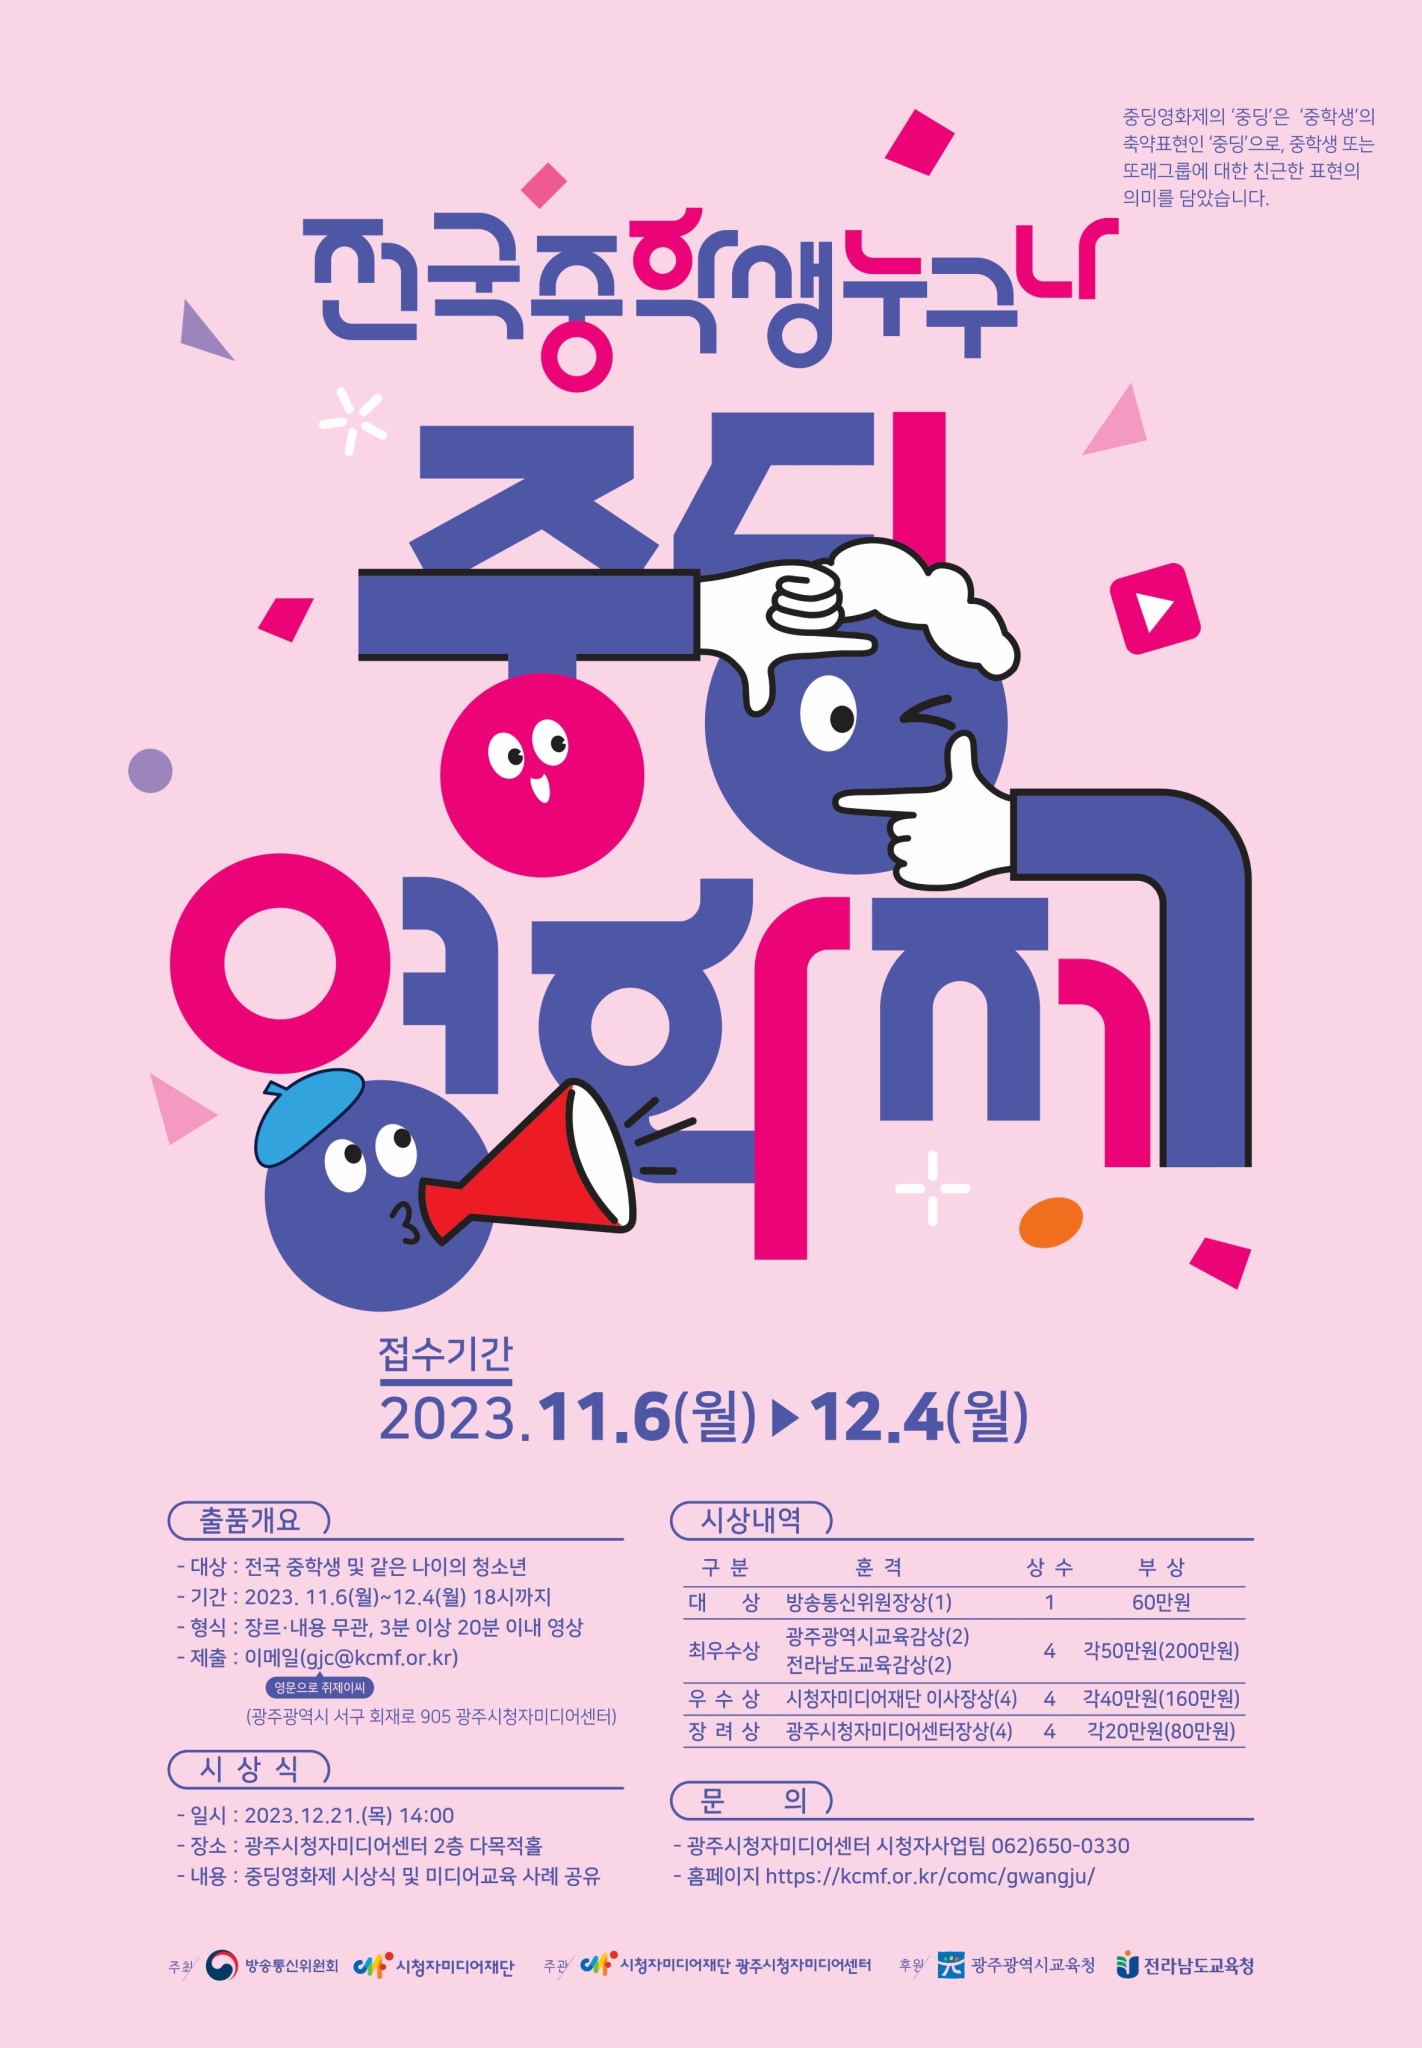 시청자미디어재단 (광주)시청자사업팀_중딩영화제 포스터(2023)_저용량